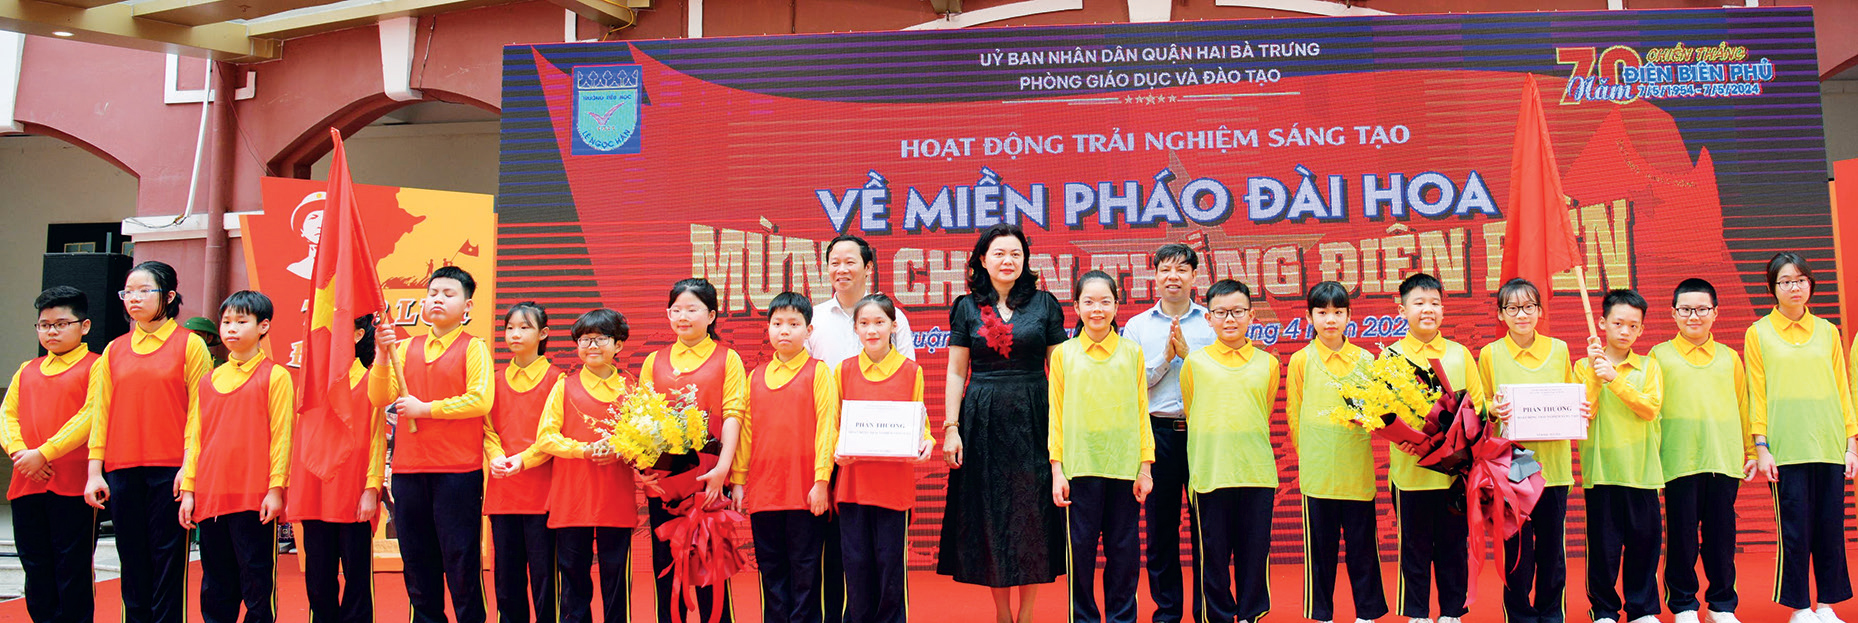 Cô Trần Lưu Hoa và thầy Cấn Văn Đa tặng quà cho các bạn học sinh tham
gia phần chơi vận động.